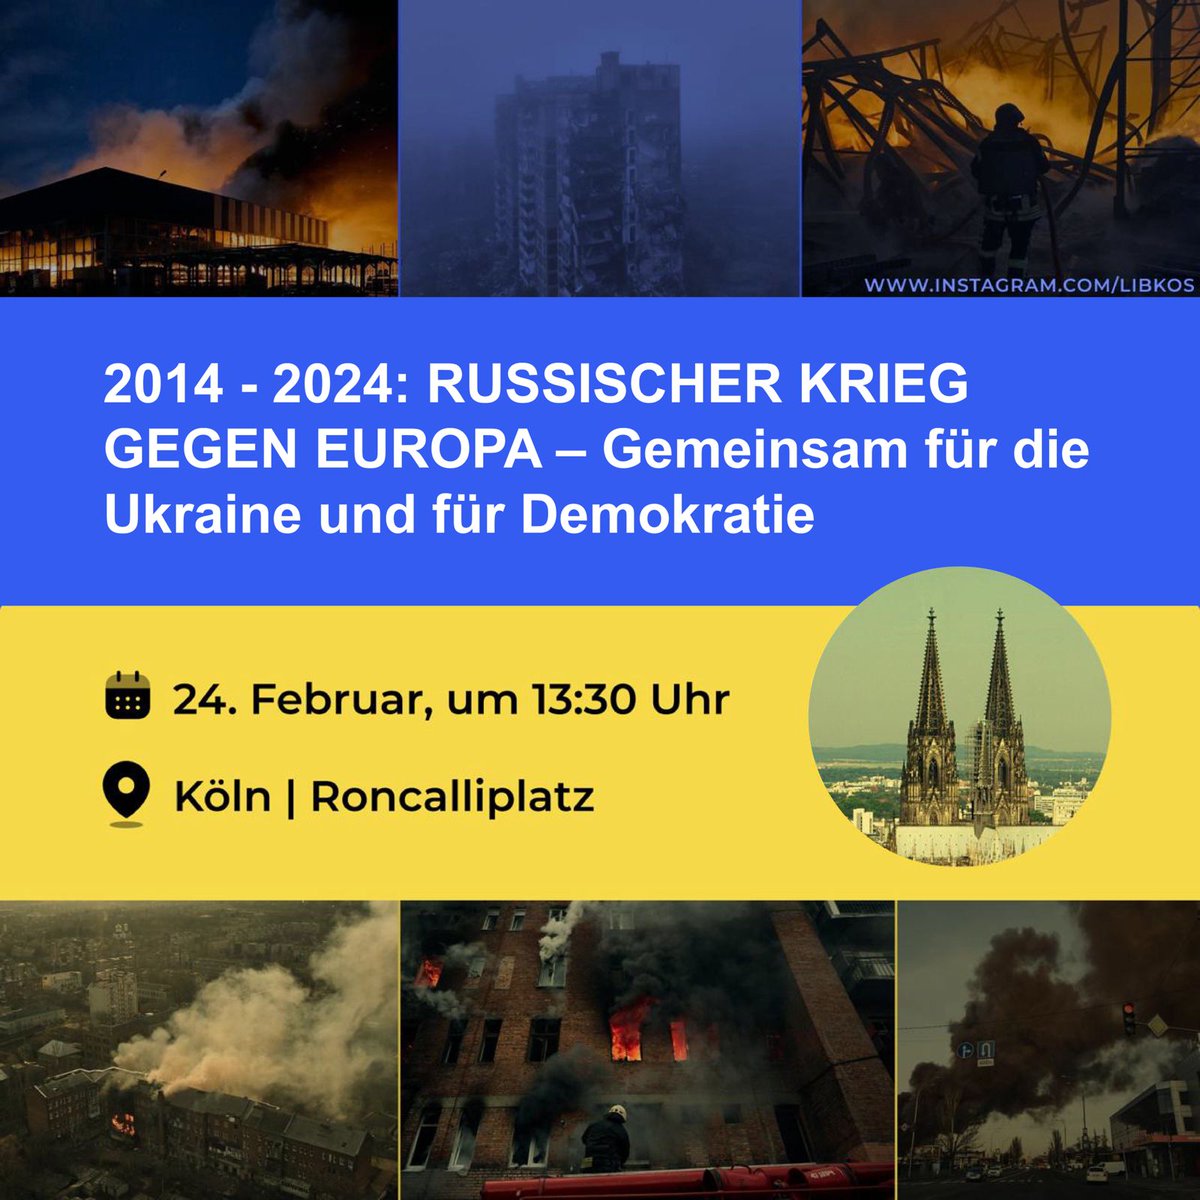 Eine der wichtigsten Demonstrationen dieses Jahres in #Köln. Wir hoffen, bald Tausende von Euch zu sehen, denn es geht um uns alle. In der Ukraine entscheidet sich die Zukunft unseres Kontinents. Gemeinsam für die Ukraine! Gemeinsam für Demokratie! #StandWithUkraine